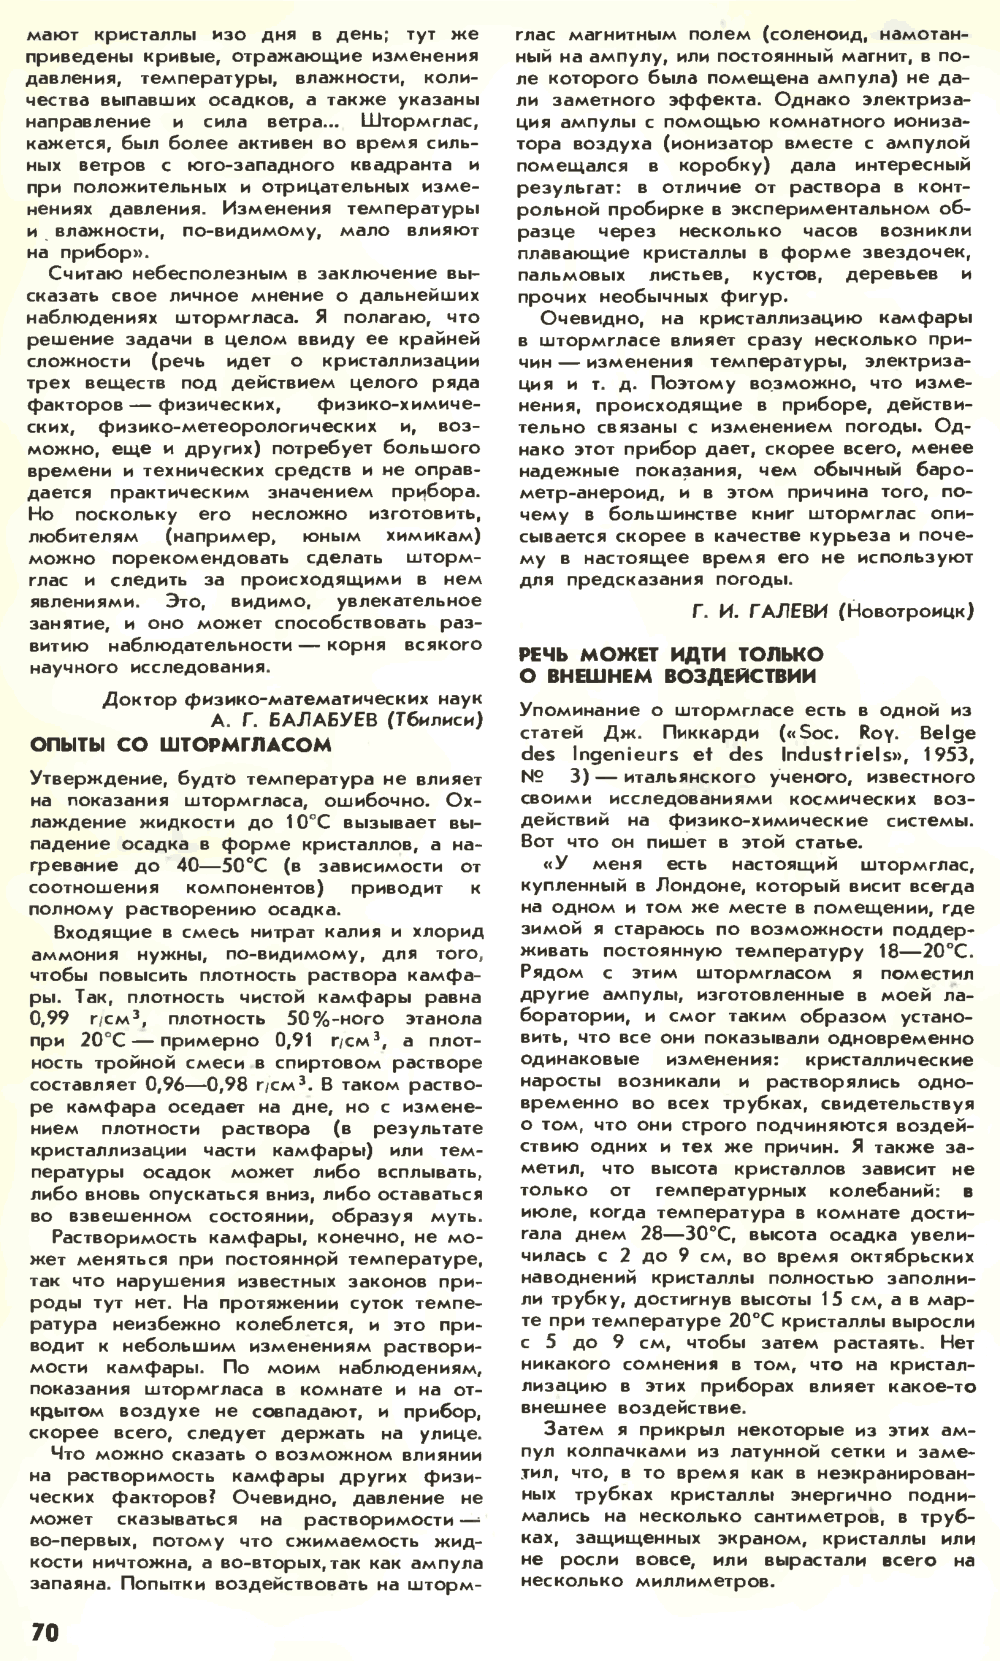 Штормгласс — легенда или реальность? Химия и жизнь, 1980, №2, с.68-71. Фотокопия №3